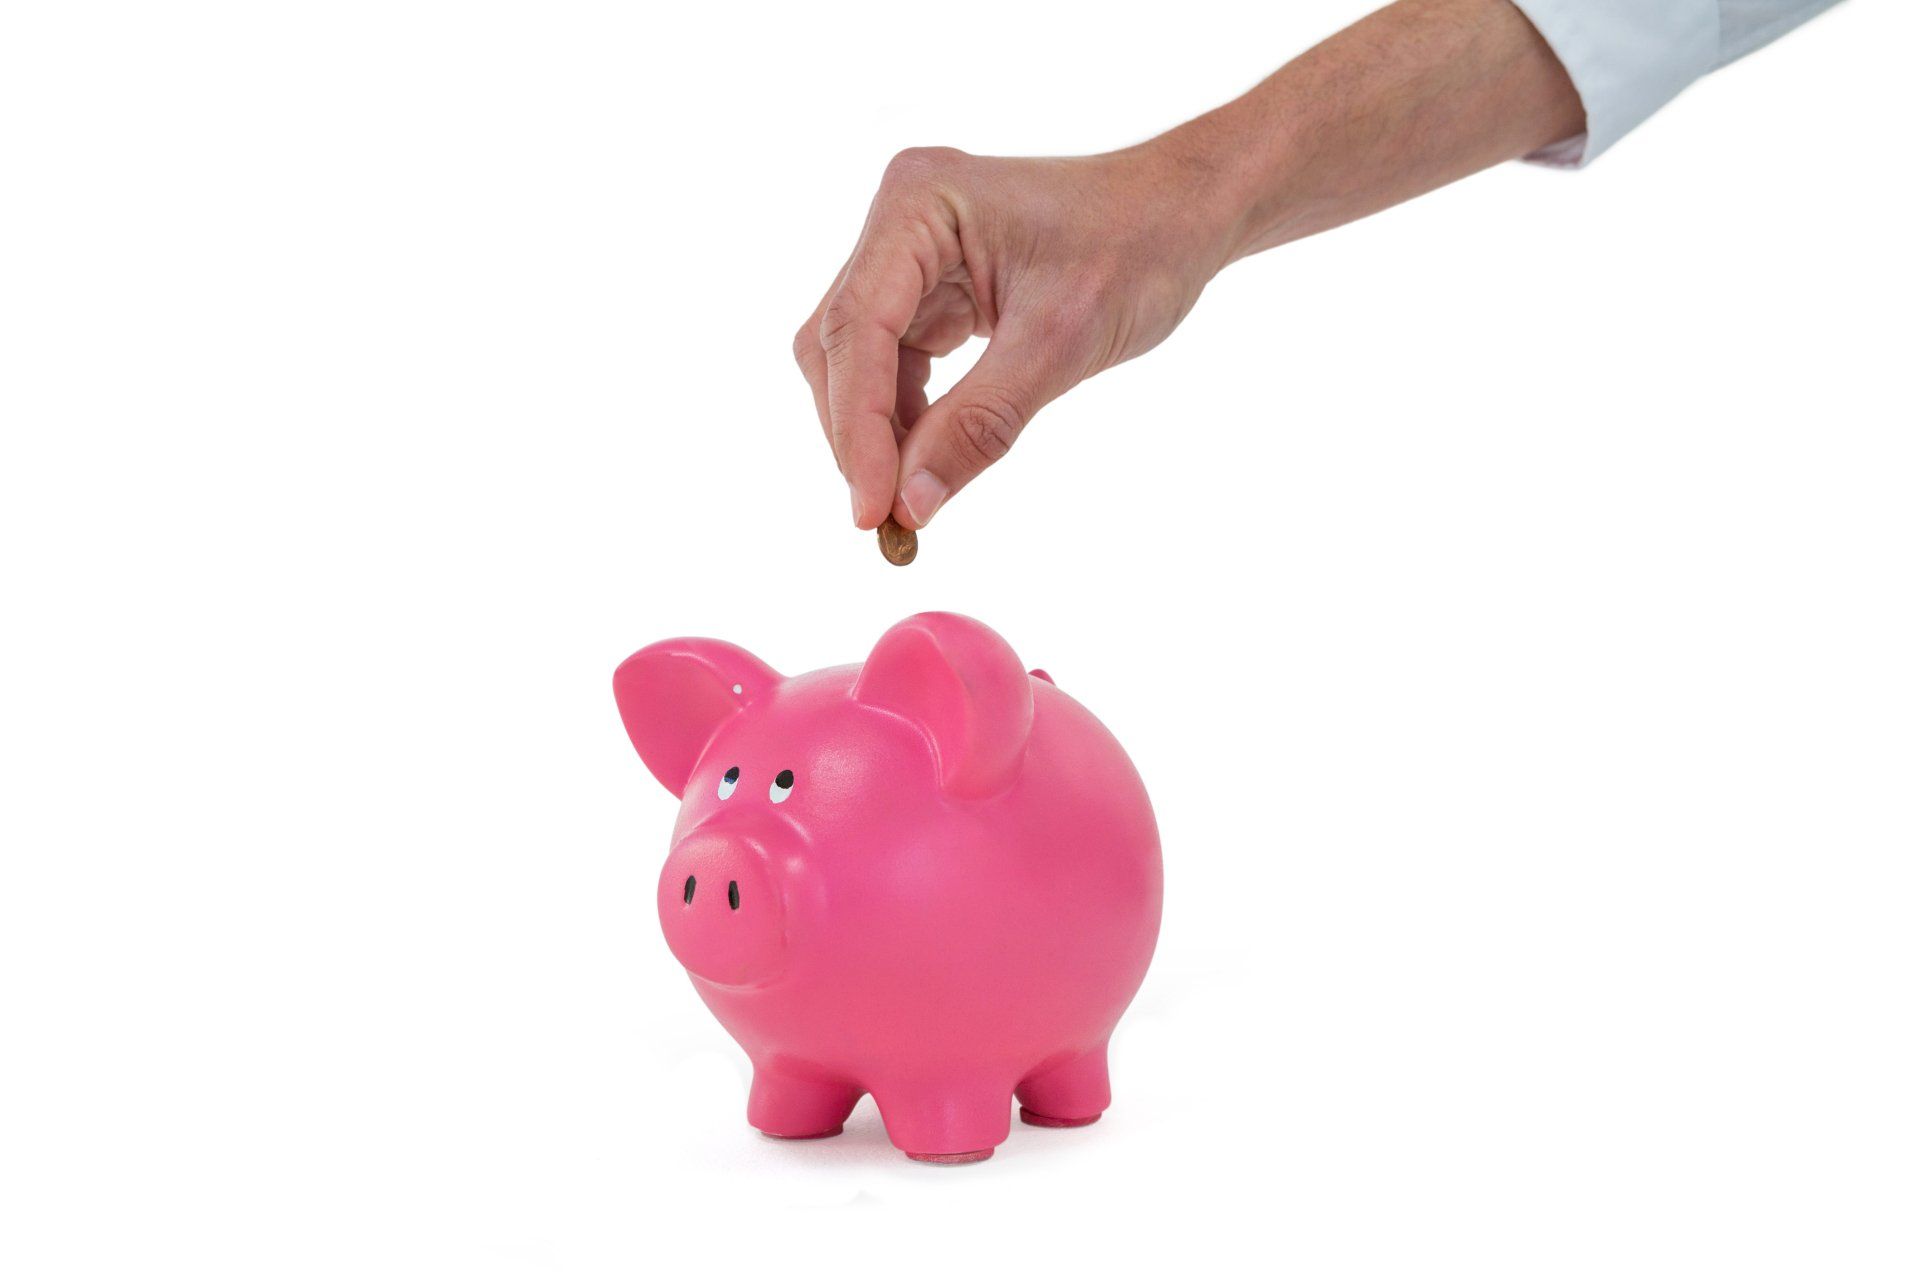 Hand placing a coin into a piggybank